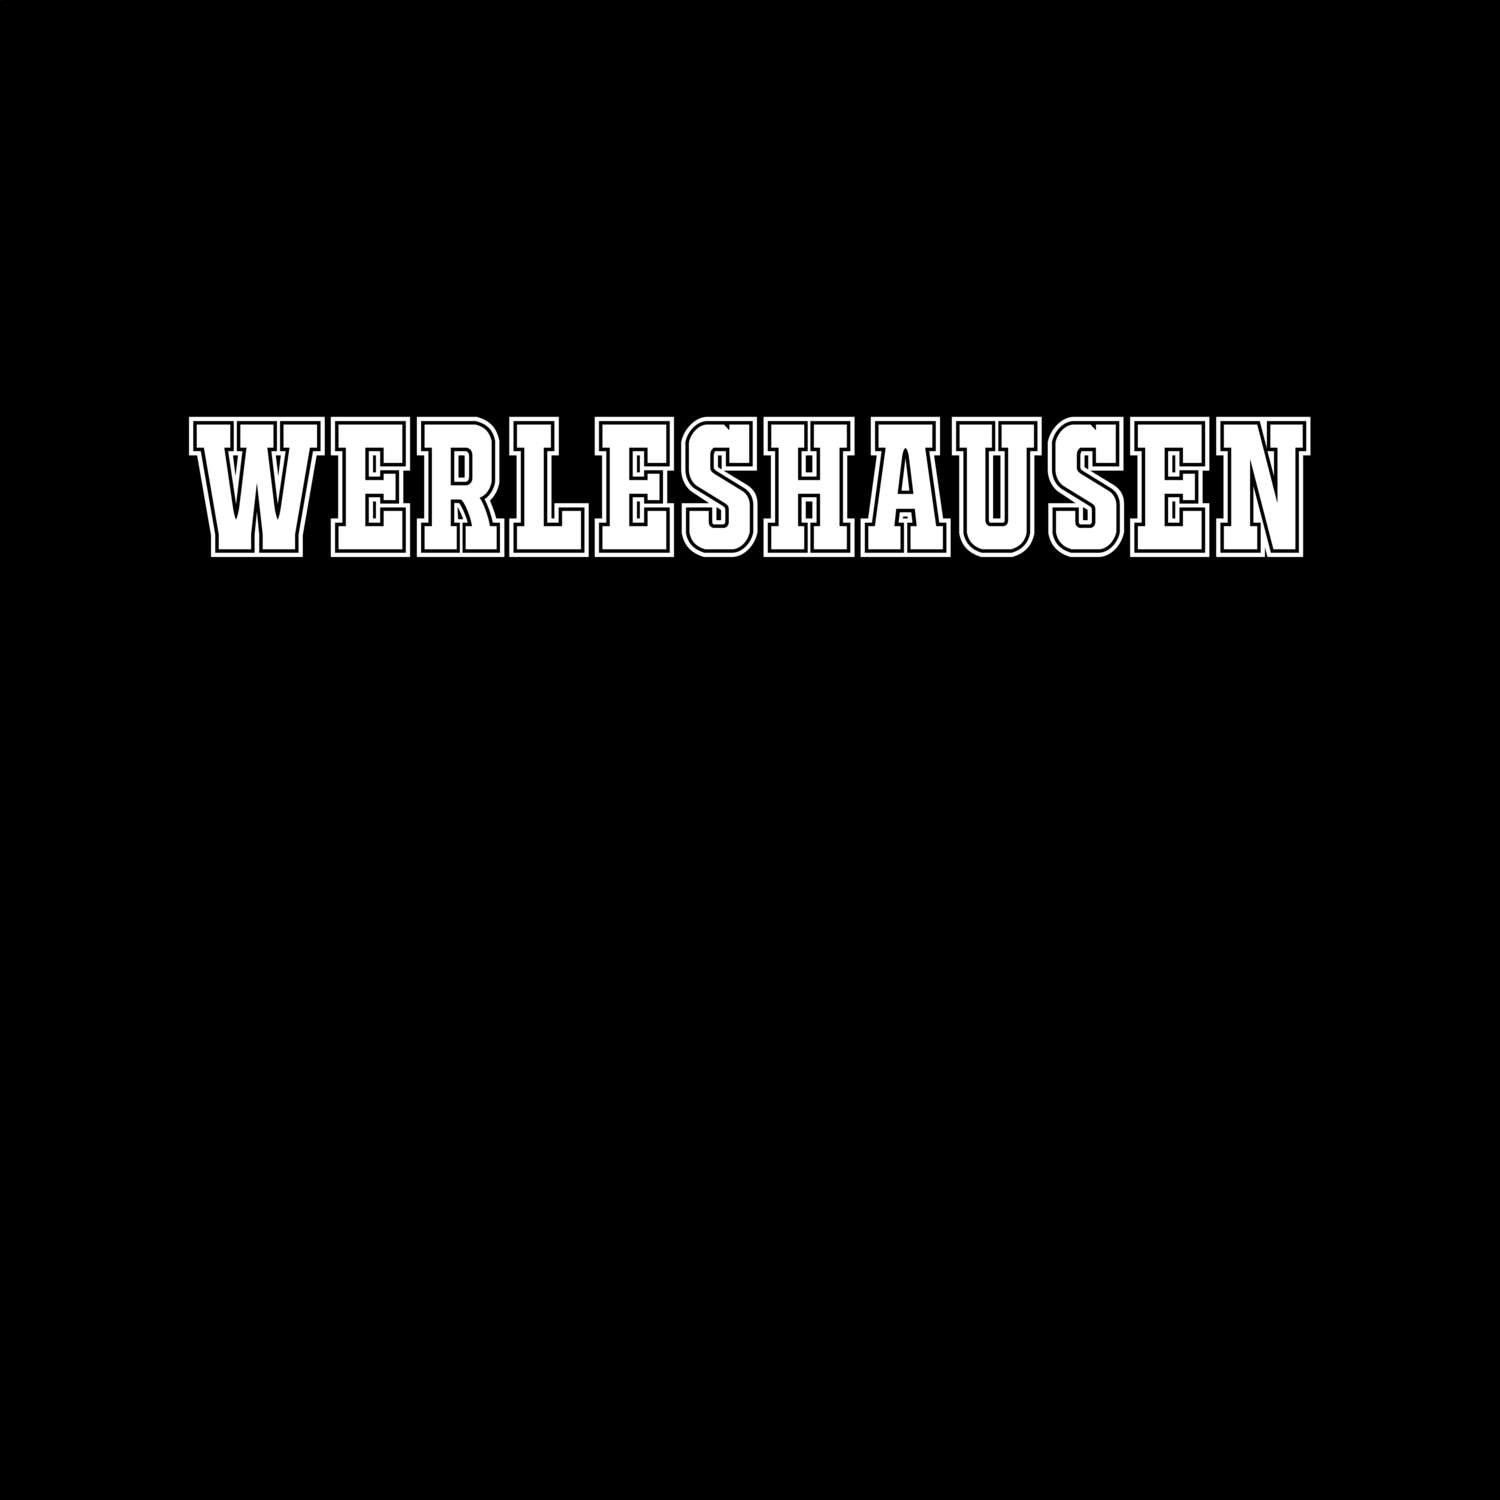 Werleshausen T-Shirt »Classic«